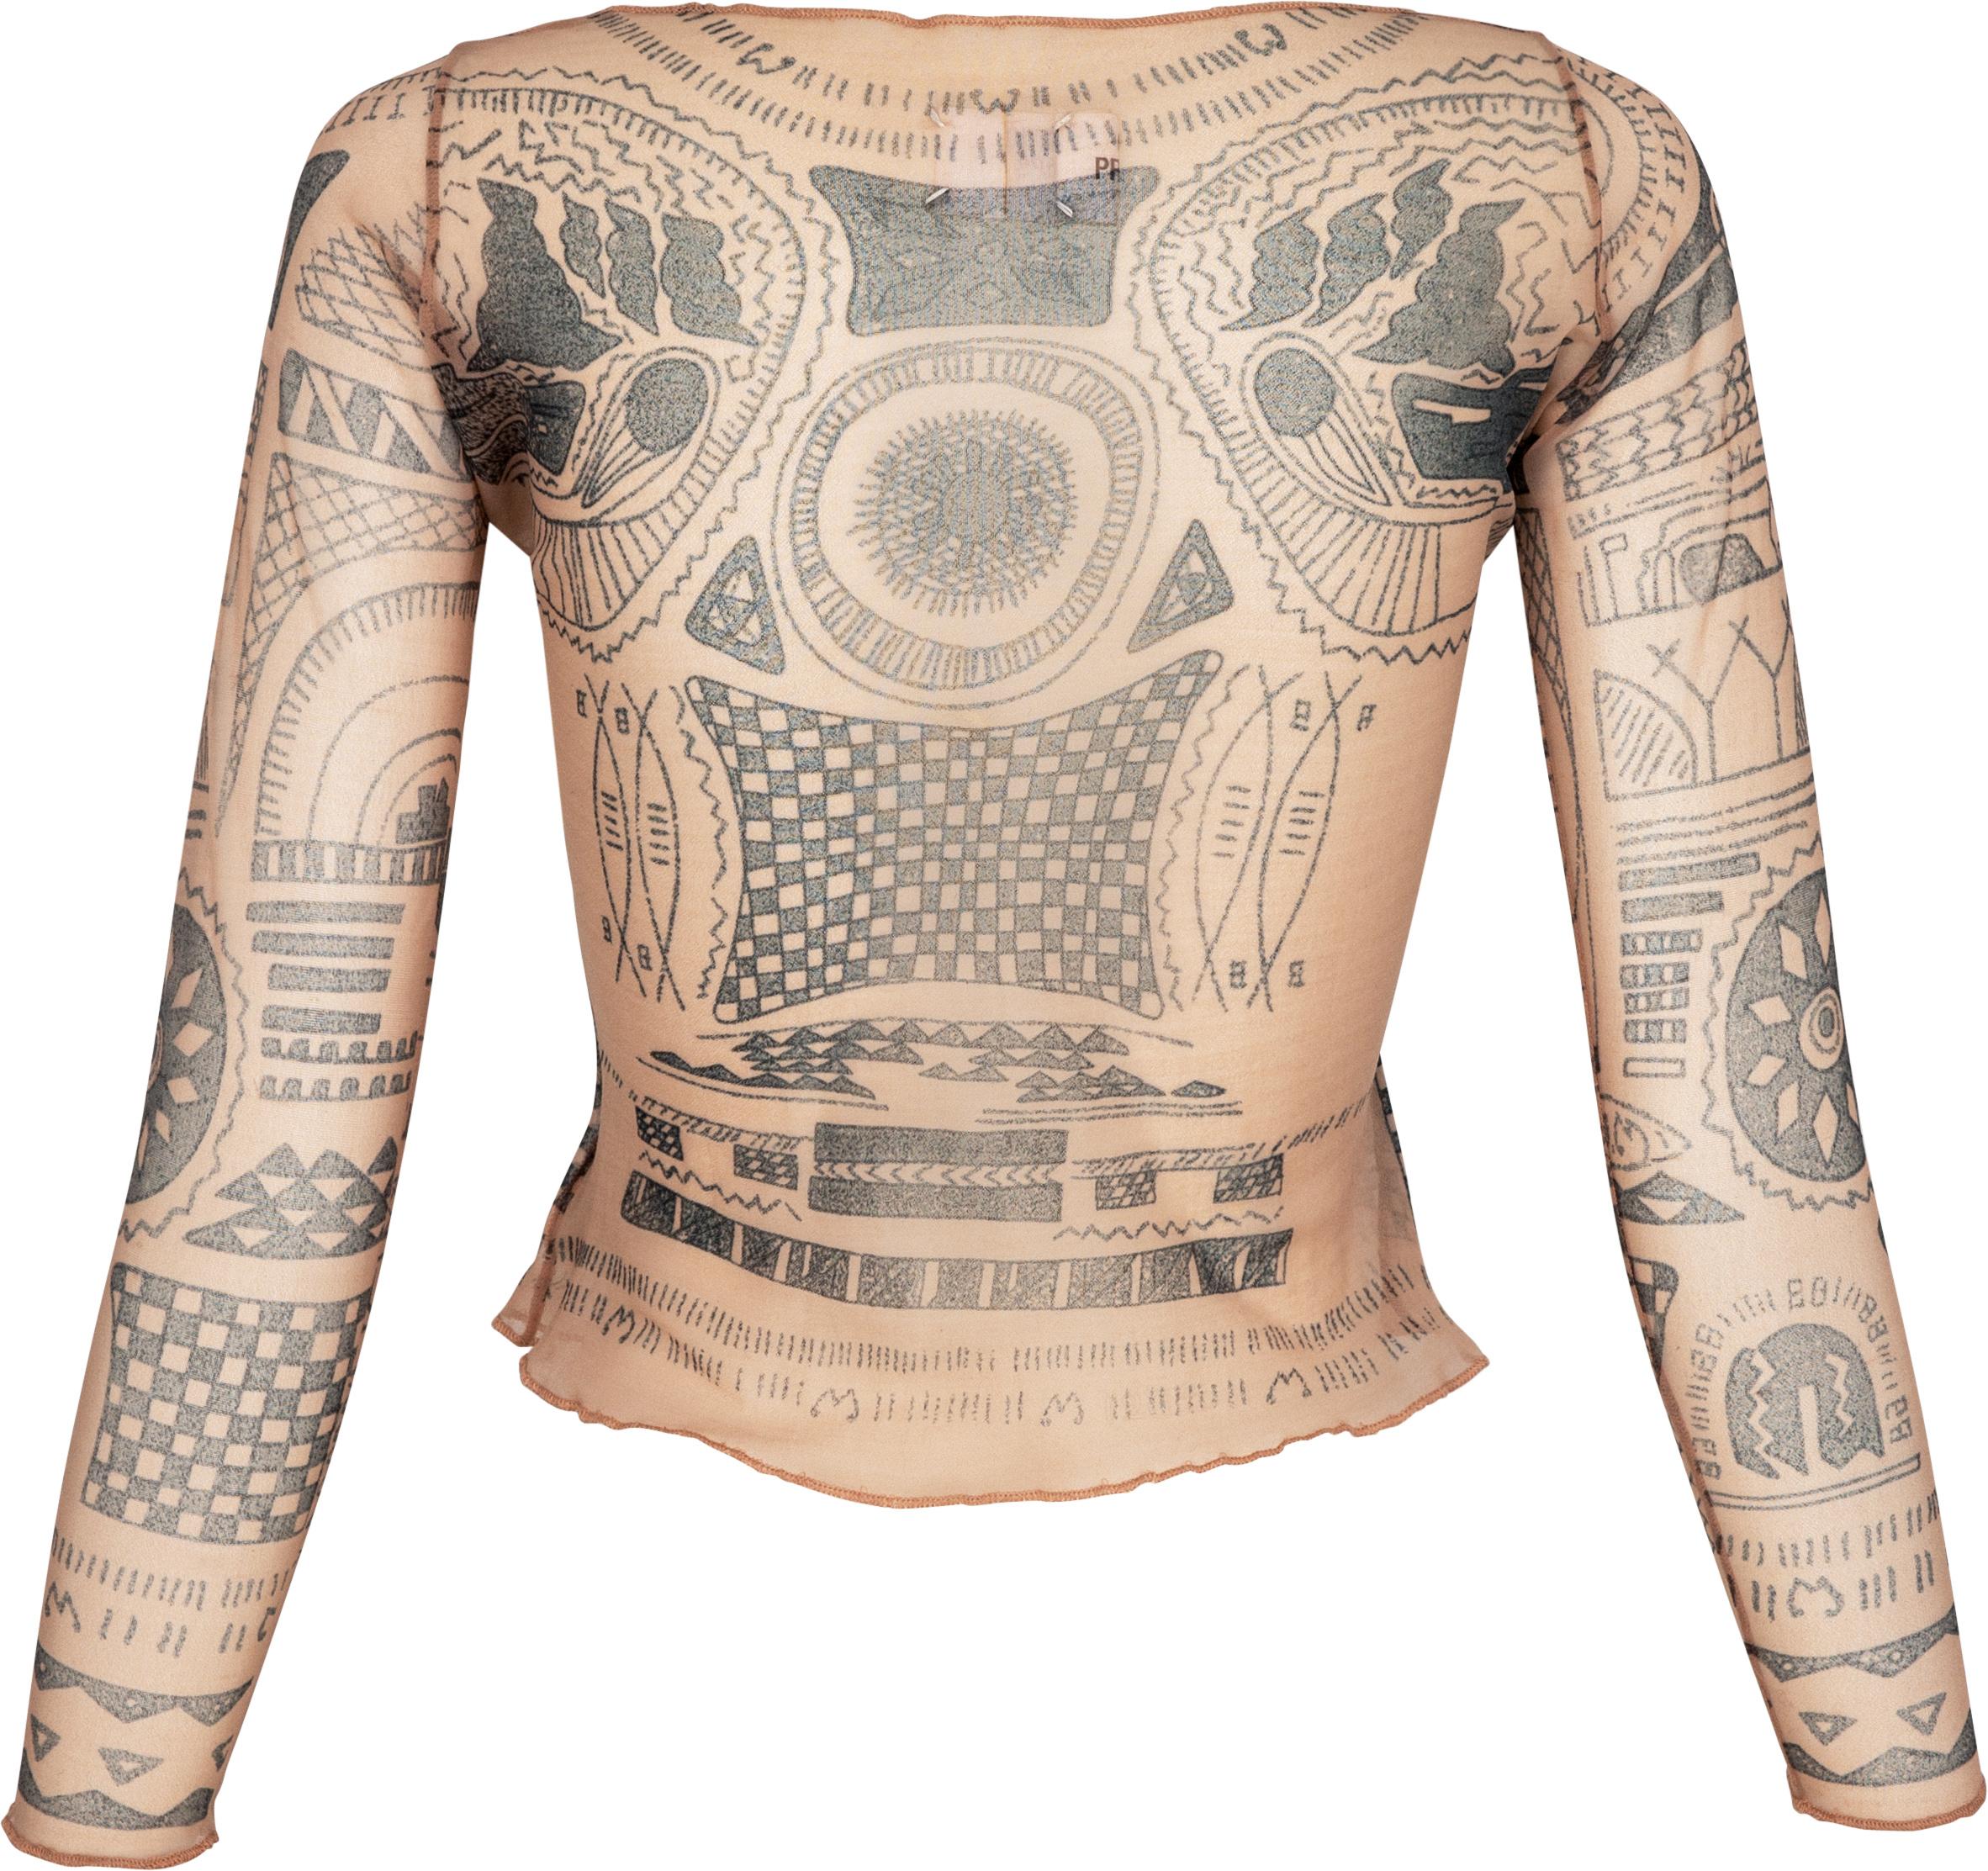 Transparentes Top aus Mesh mit Tribal-Tattoo-Motiven aus Französisch-Polynesien. Der Entwurf stammt von Martines erster und historischer Laufstegshow im Jahr 1989 und wurde für seine 